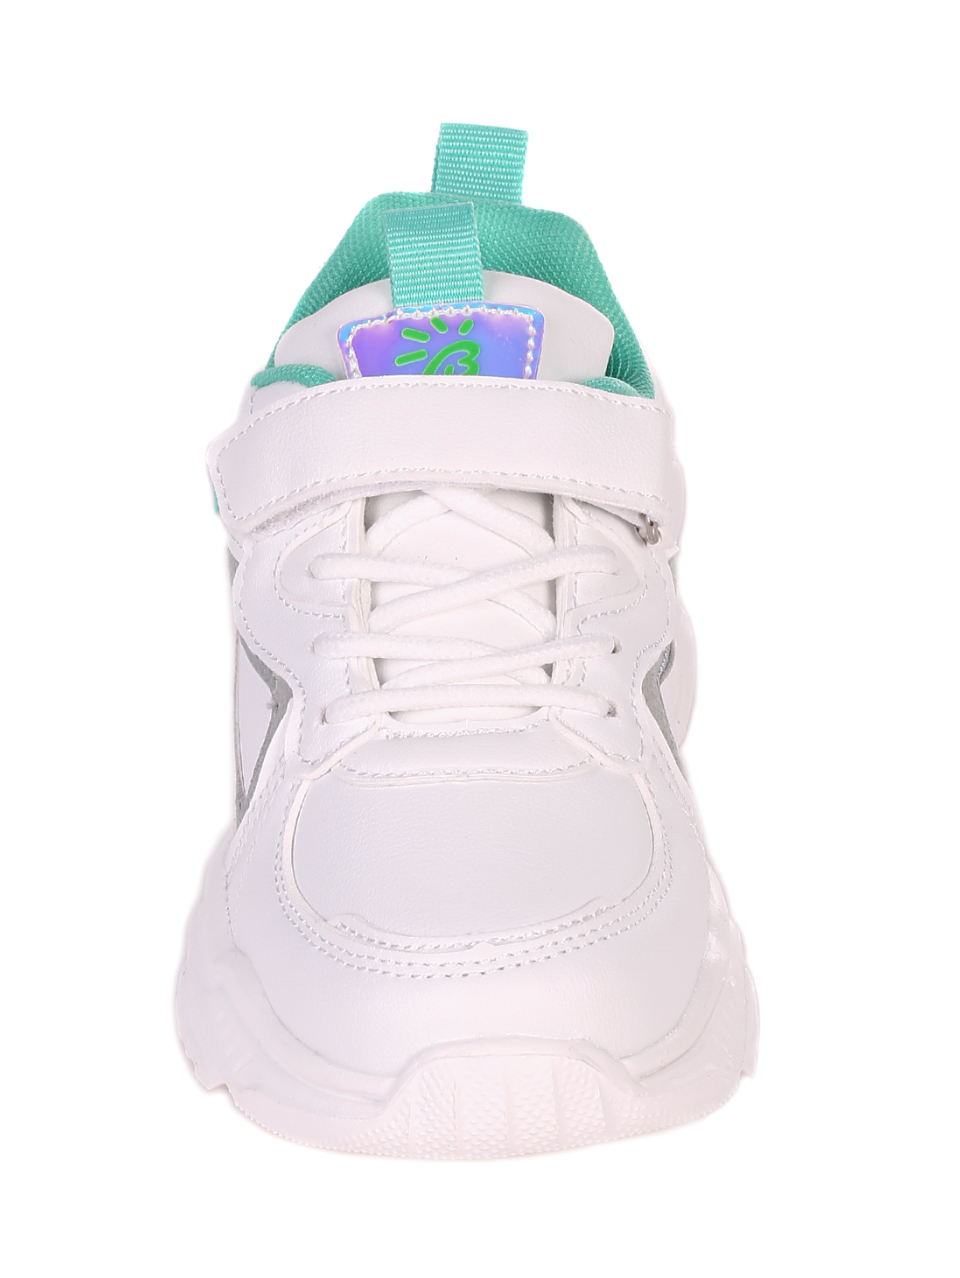 Ежедневни детски обувки в бяло и зелено 18P-21082 white/green